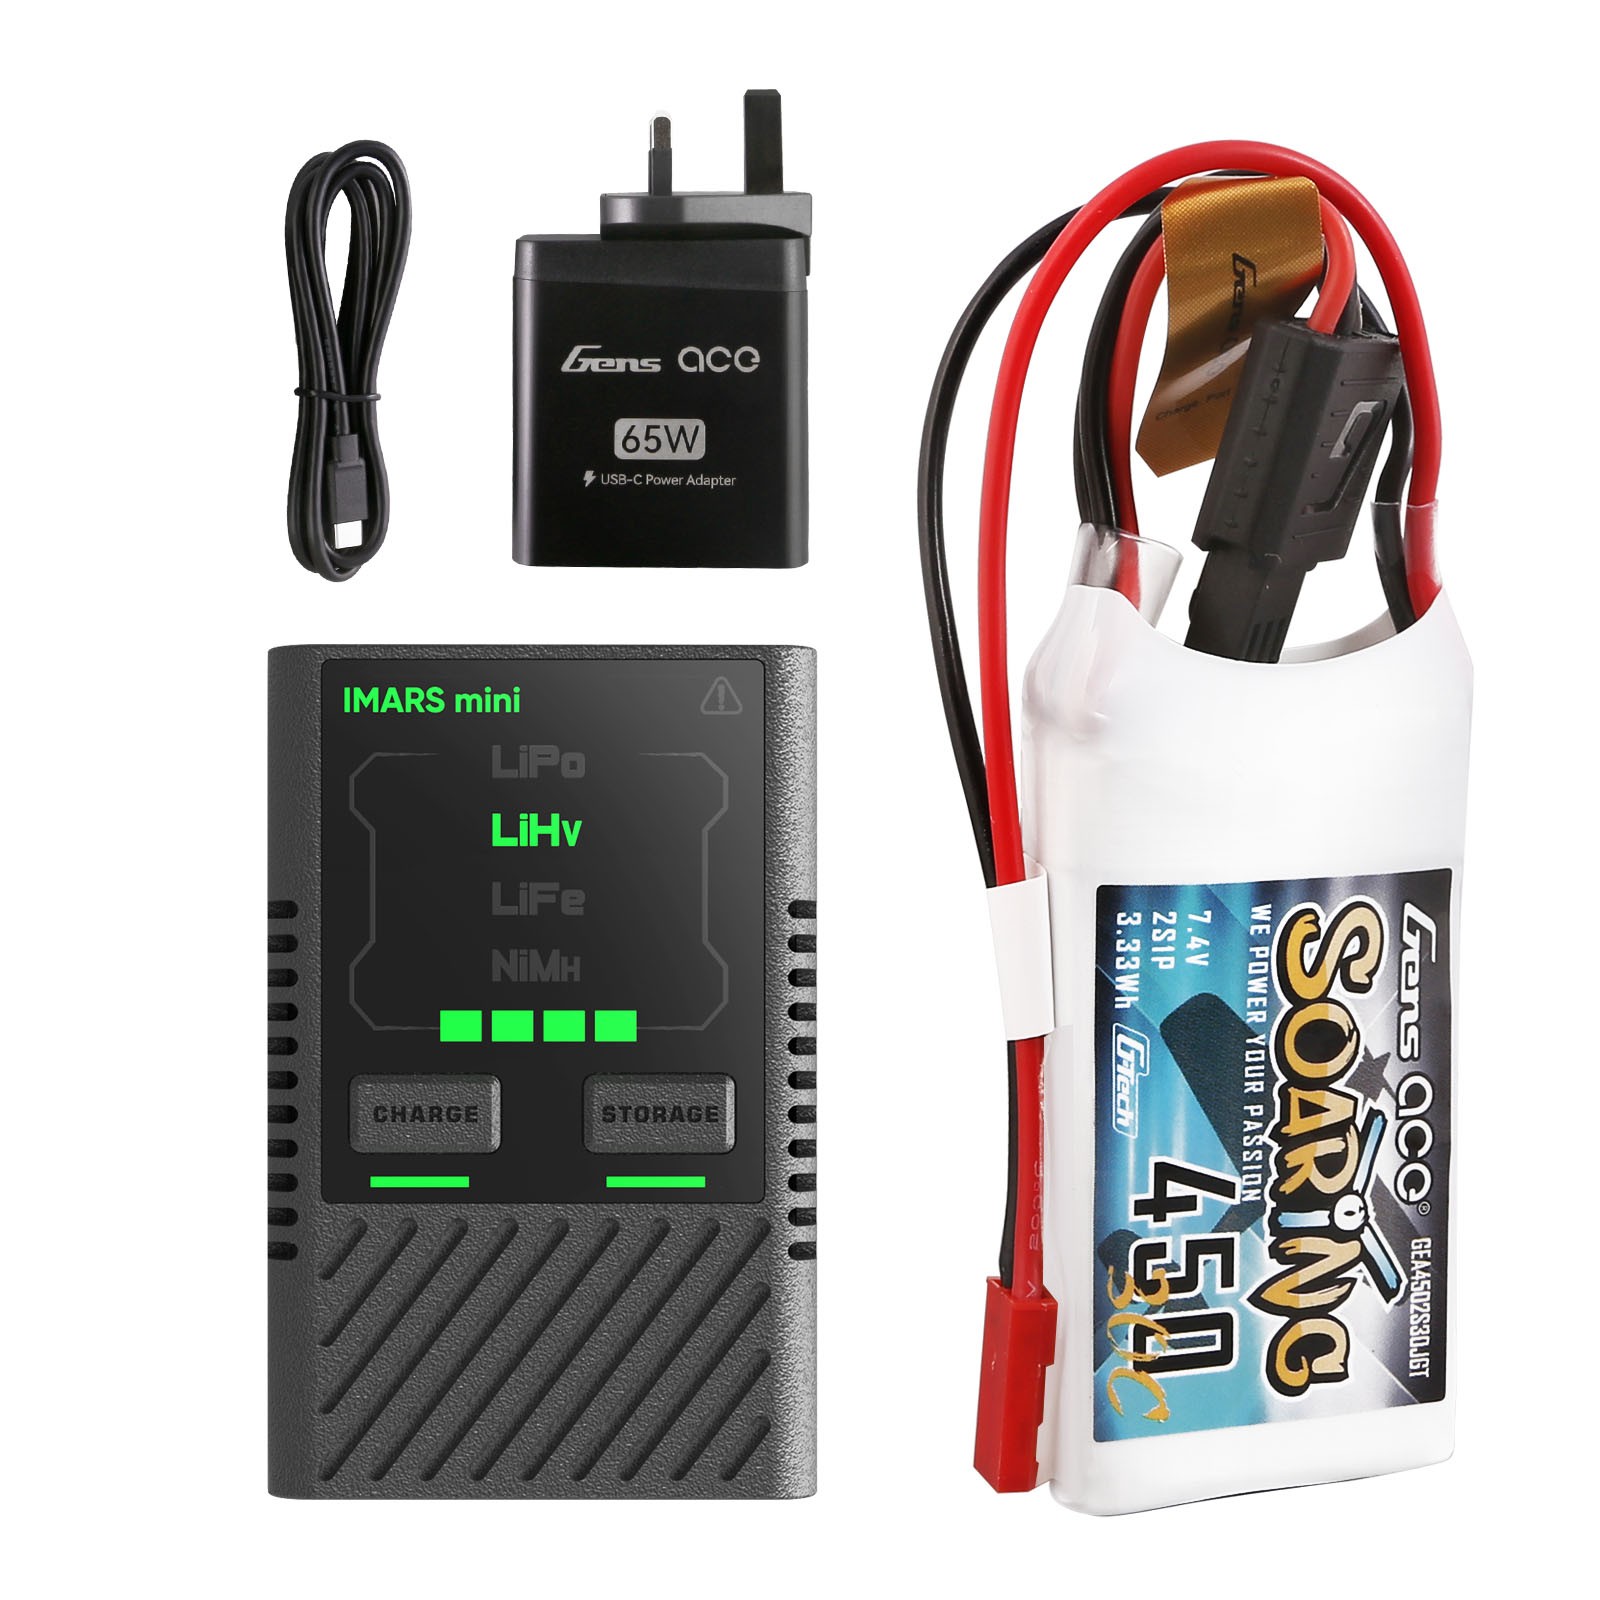 FancyWhoop 2S Li-Ion Battery T Plug 7.4V 2000mah W/ USB Charger